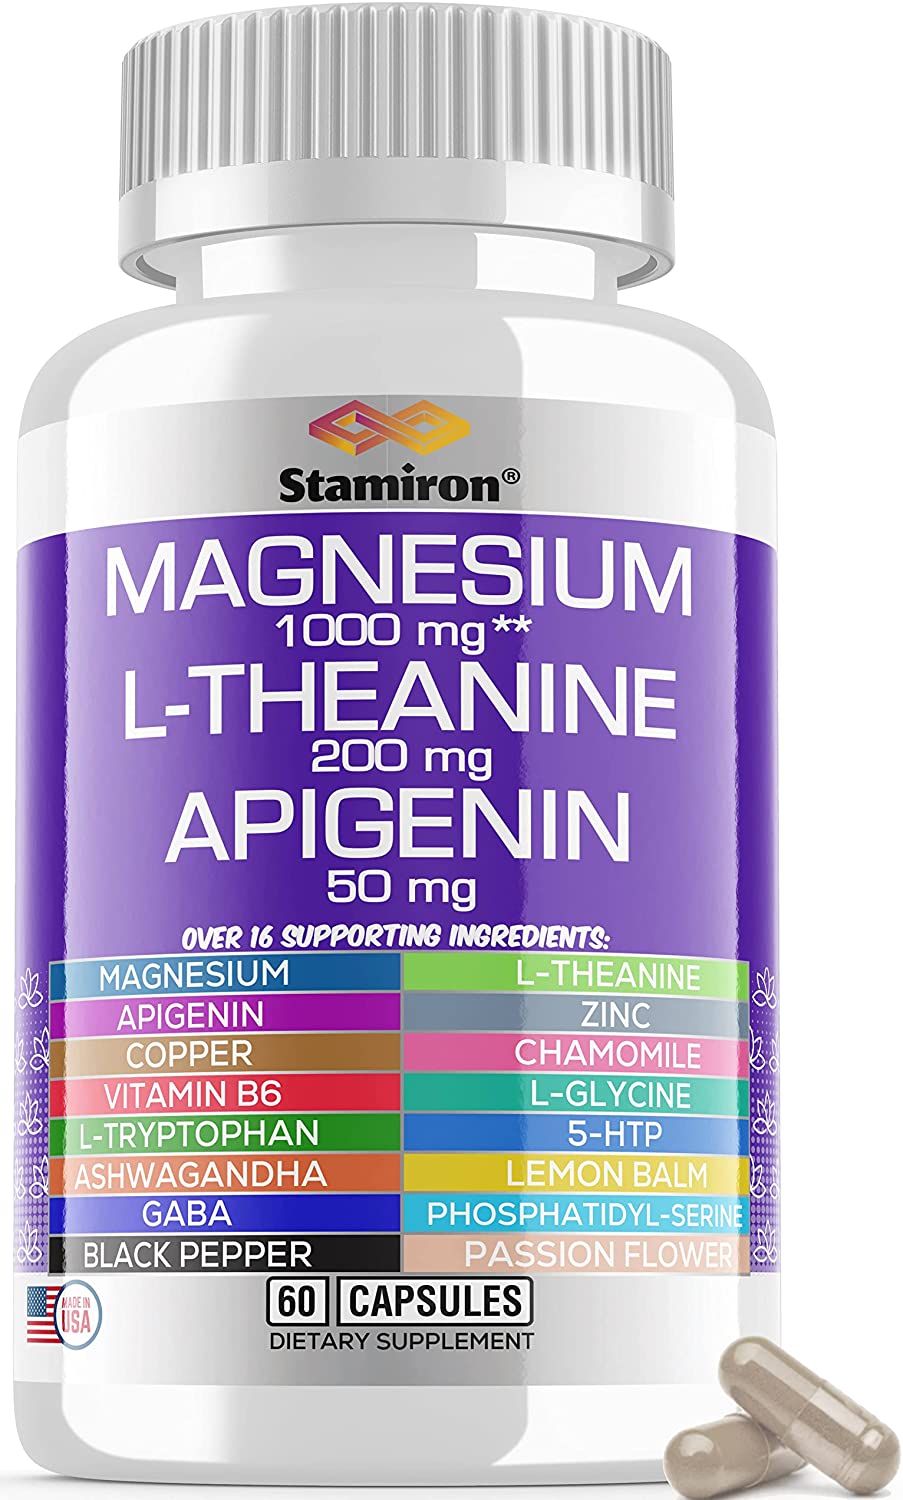 Magensium L-Theanine Apigenin